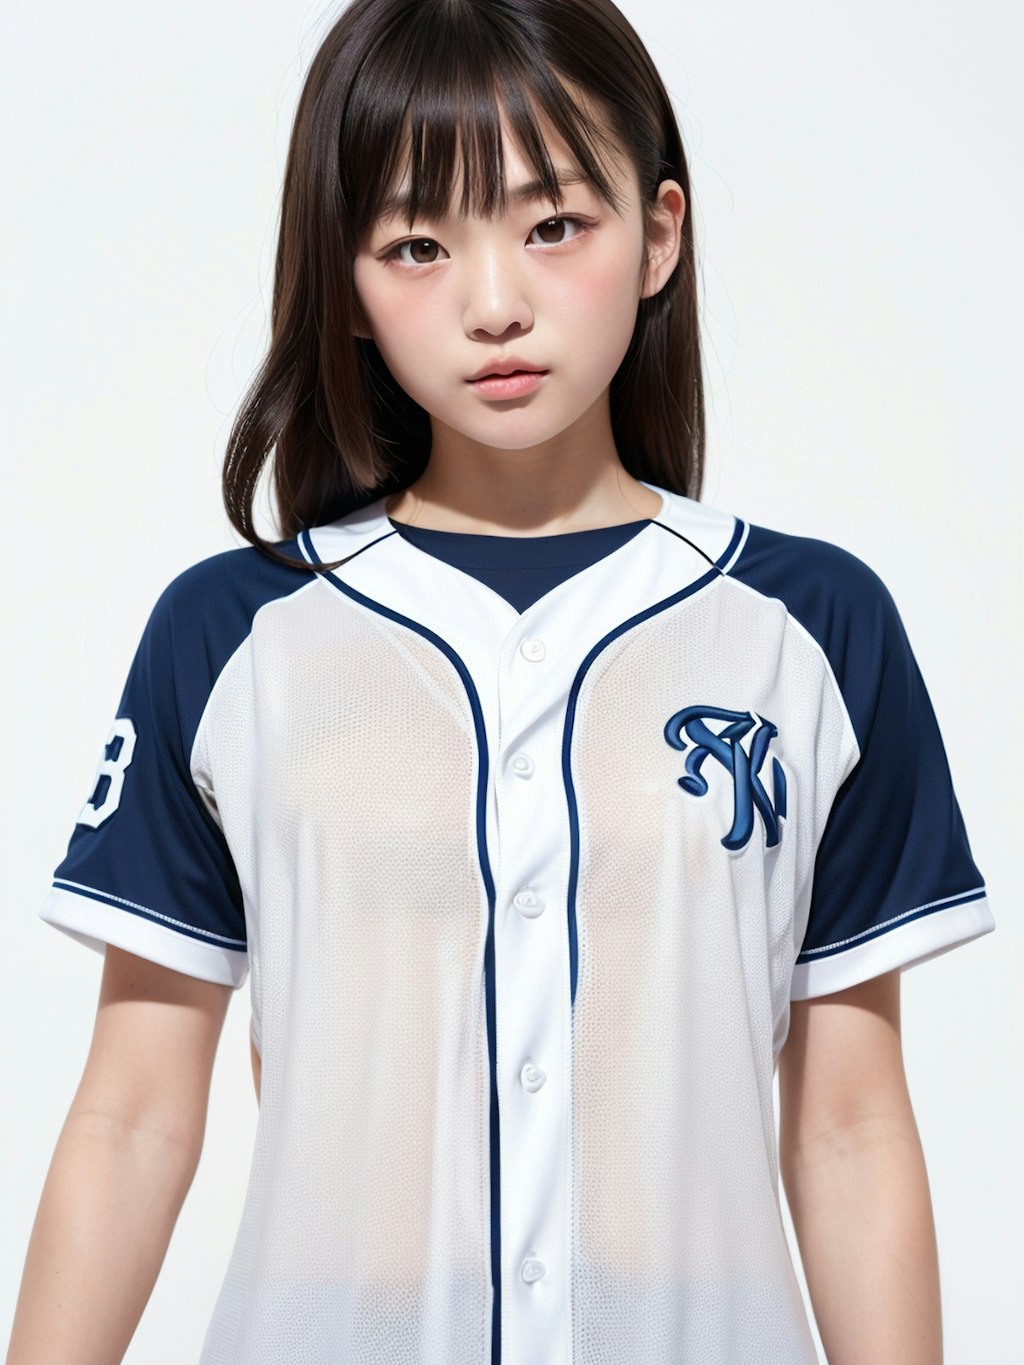 野球少女